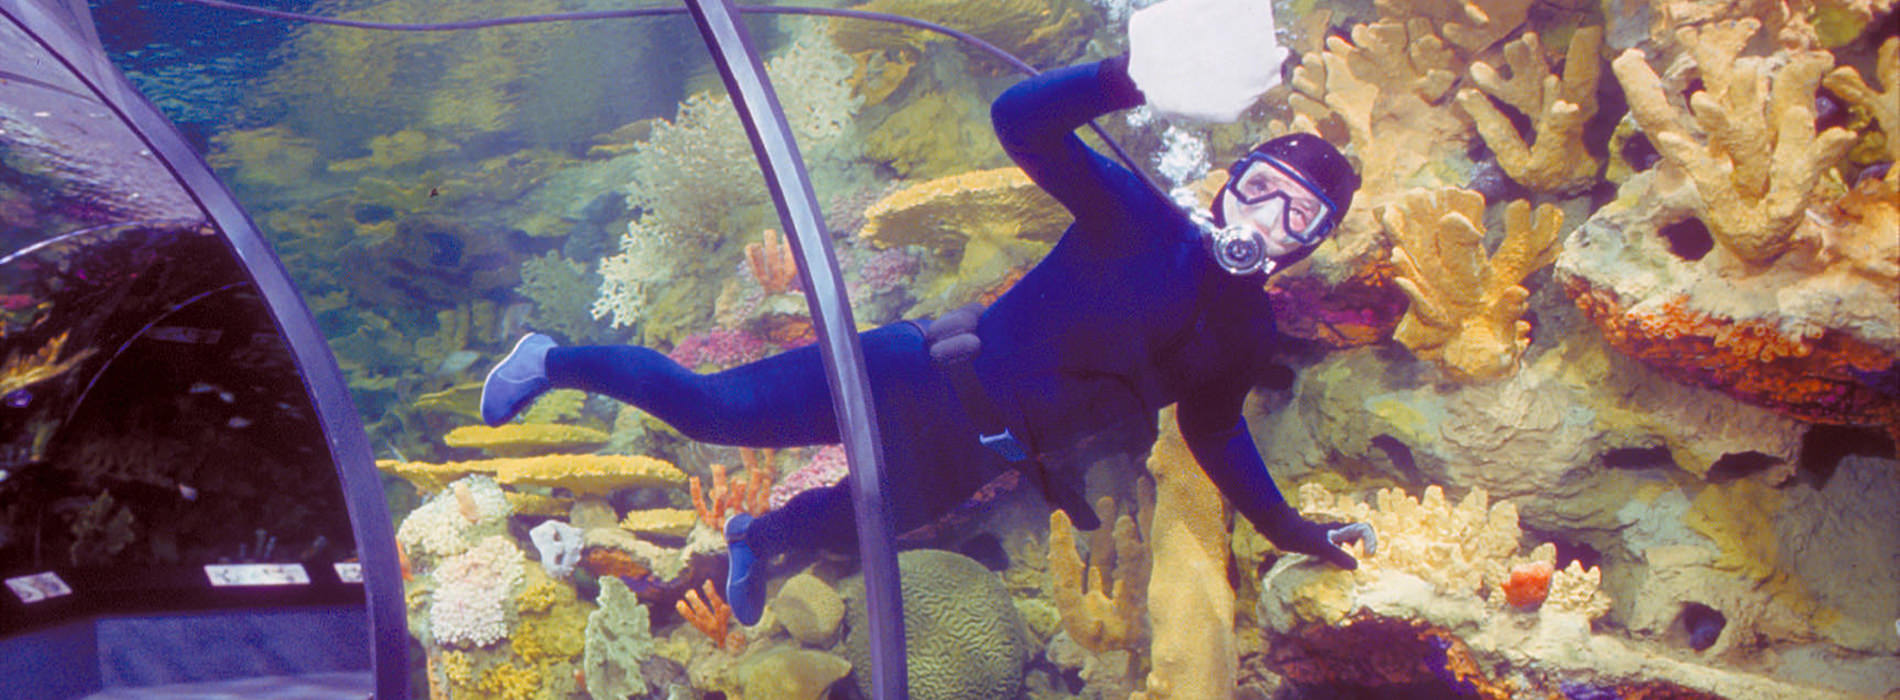 A scuba diver cleaning the aquarium 